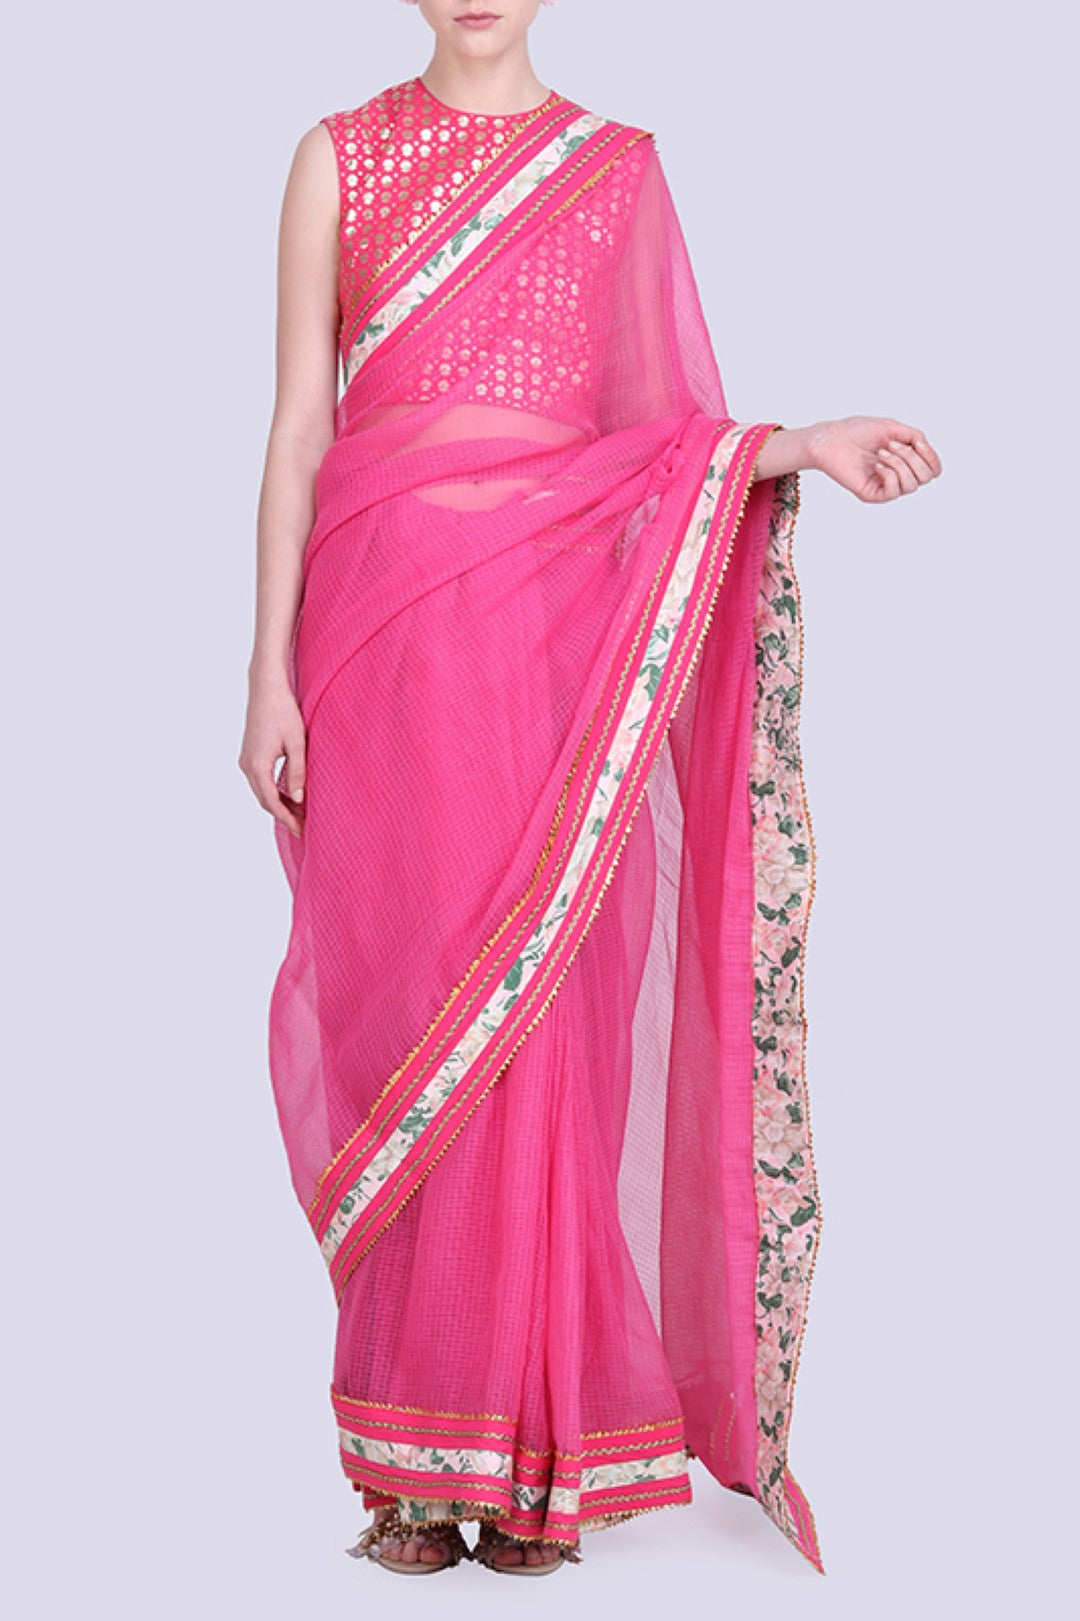 Hot pink pink kota doria saree gota border with a gold foil printed blouse .